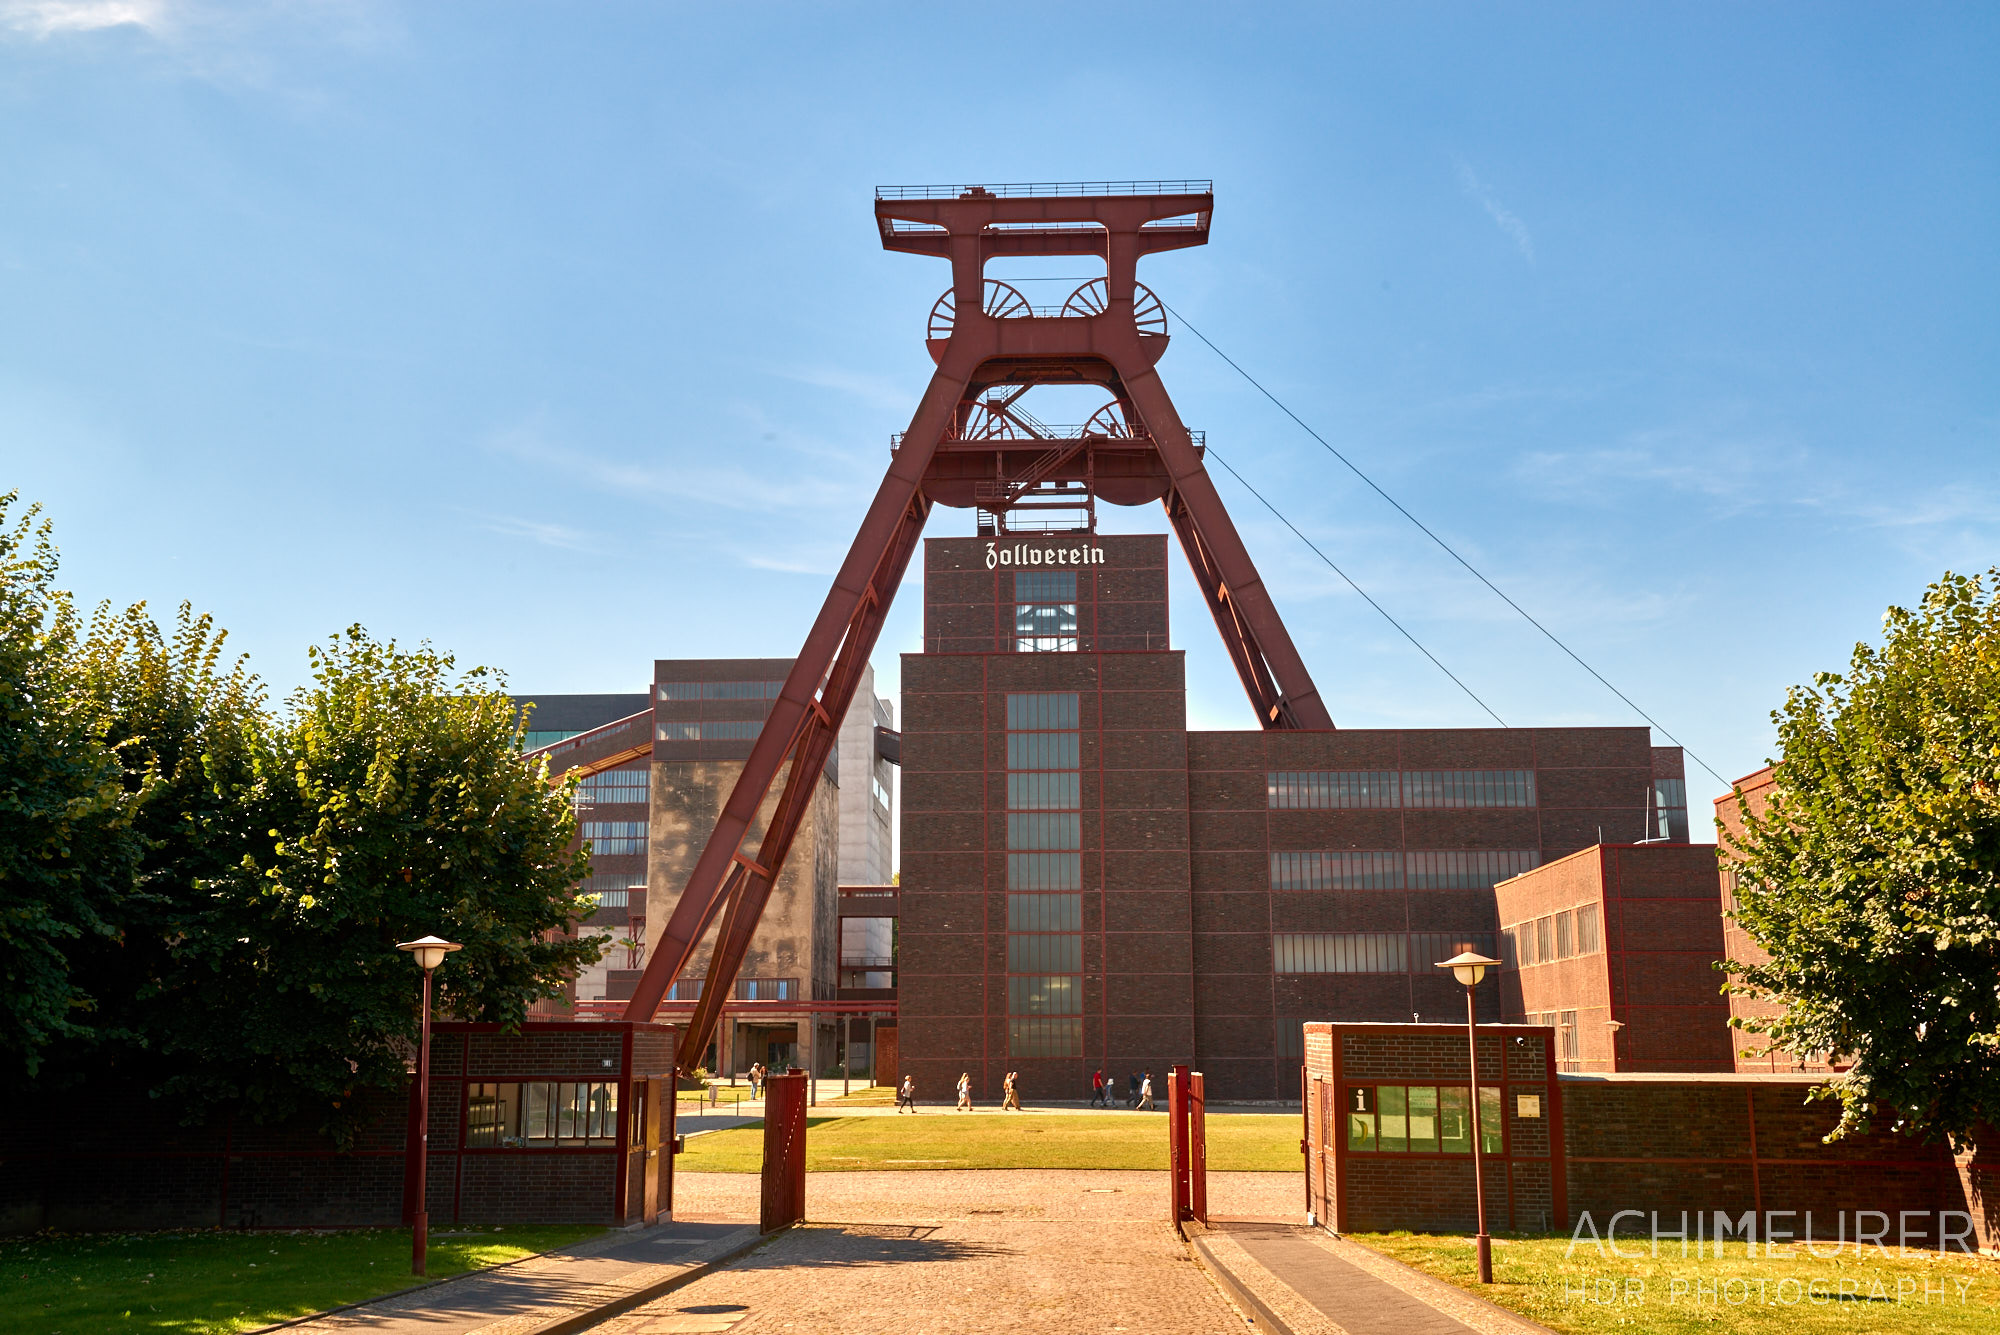 Zeche Zeche Zollverein in Essen Ruhrgebiet